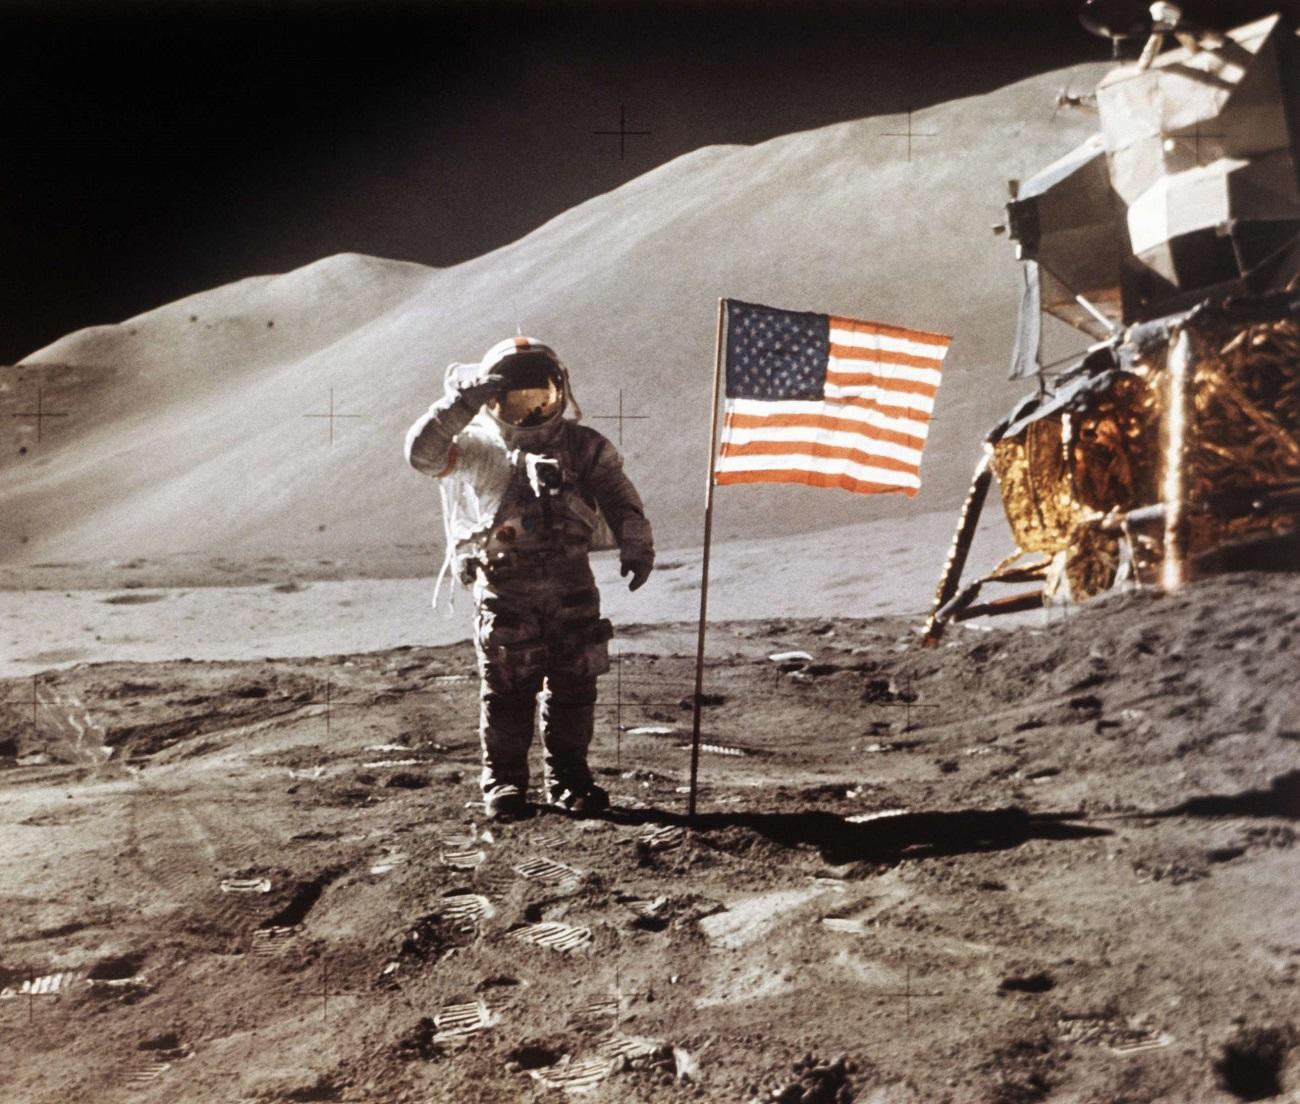 رائد فضاء أميركي يهبط على القمر في رحلة ابولو  15 عام 1971